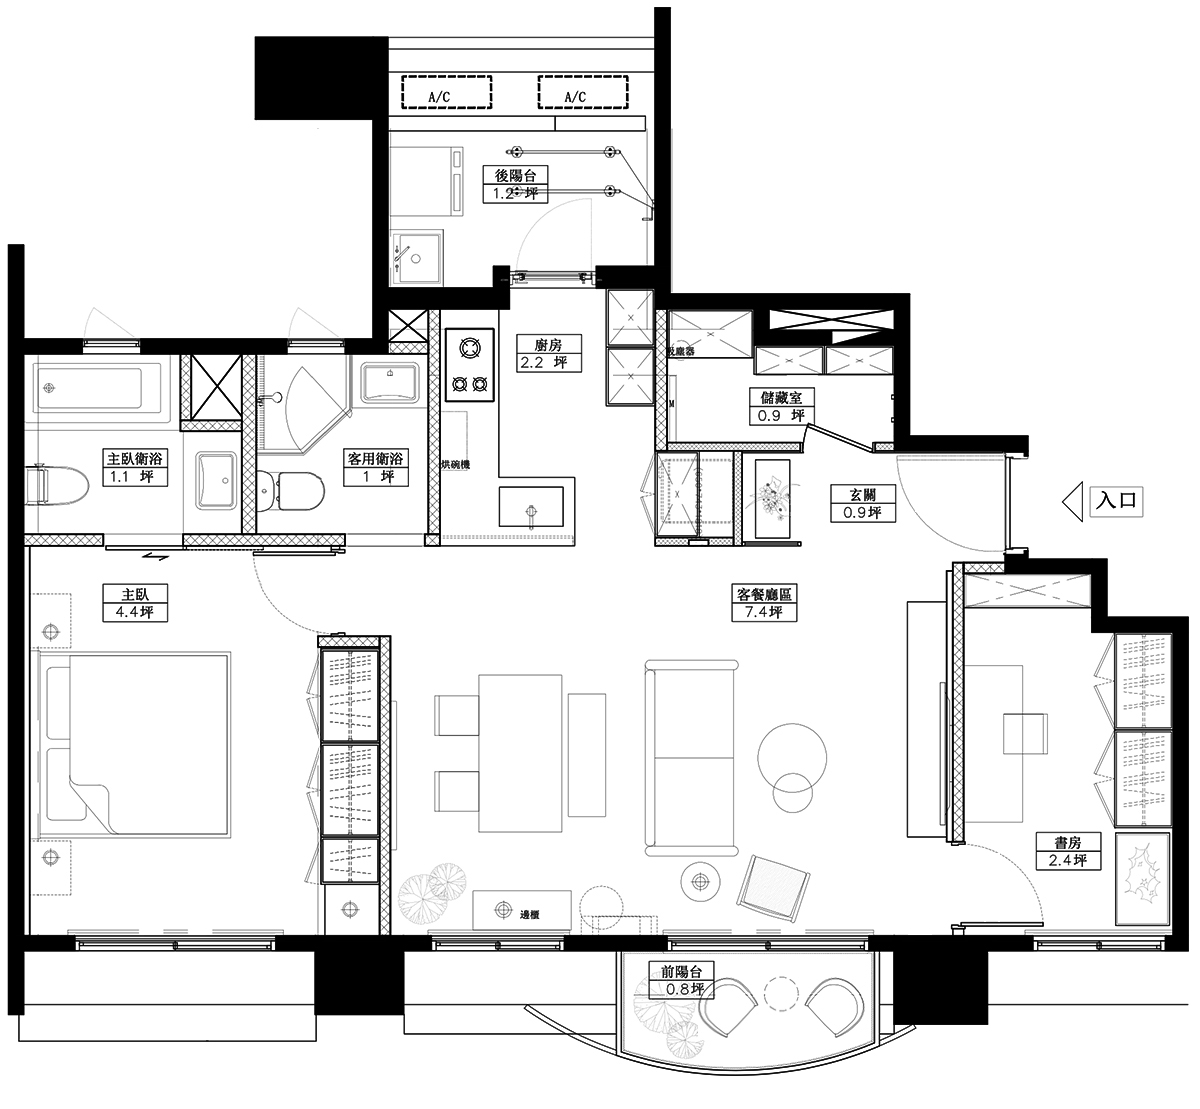 沐光植境设计,小公寓设计,公寓设计案例,公寓设计,沐光植境设计,60㎡公寓设计,最小宅